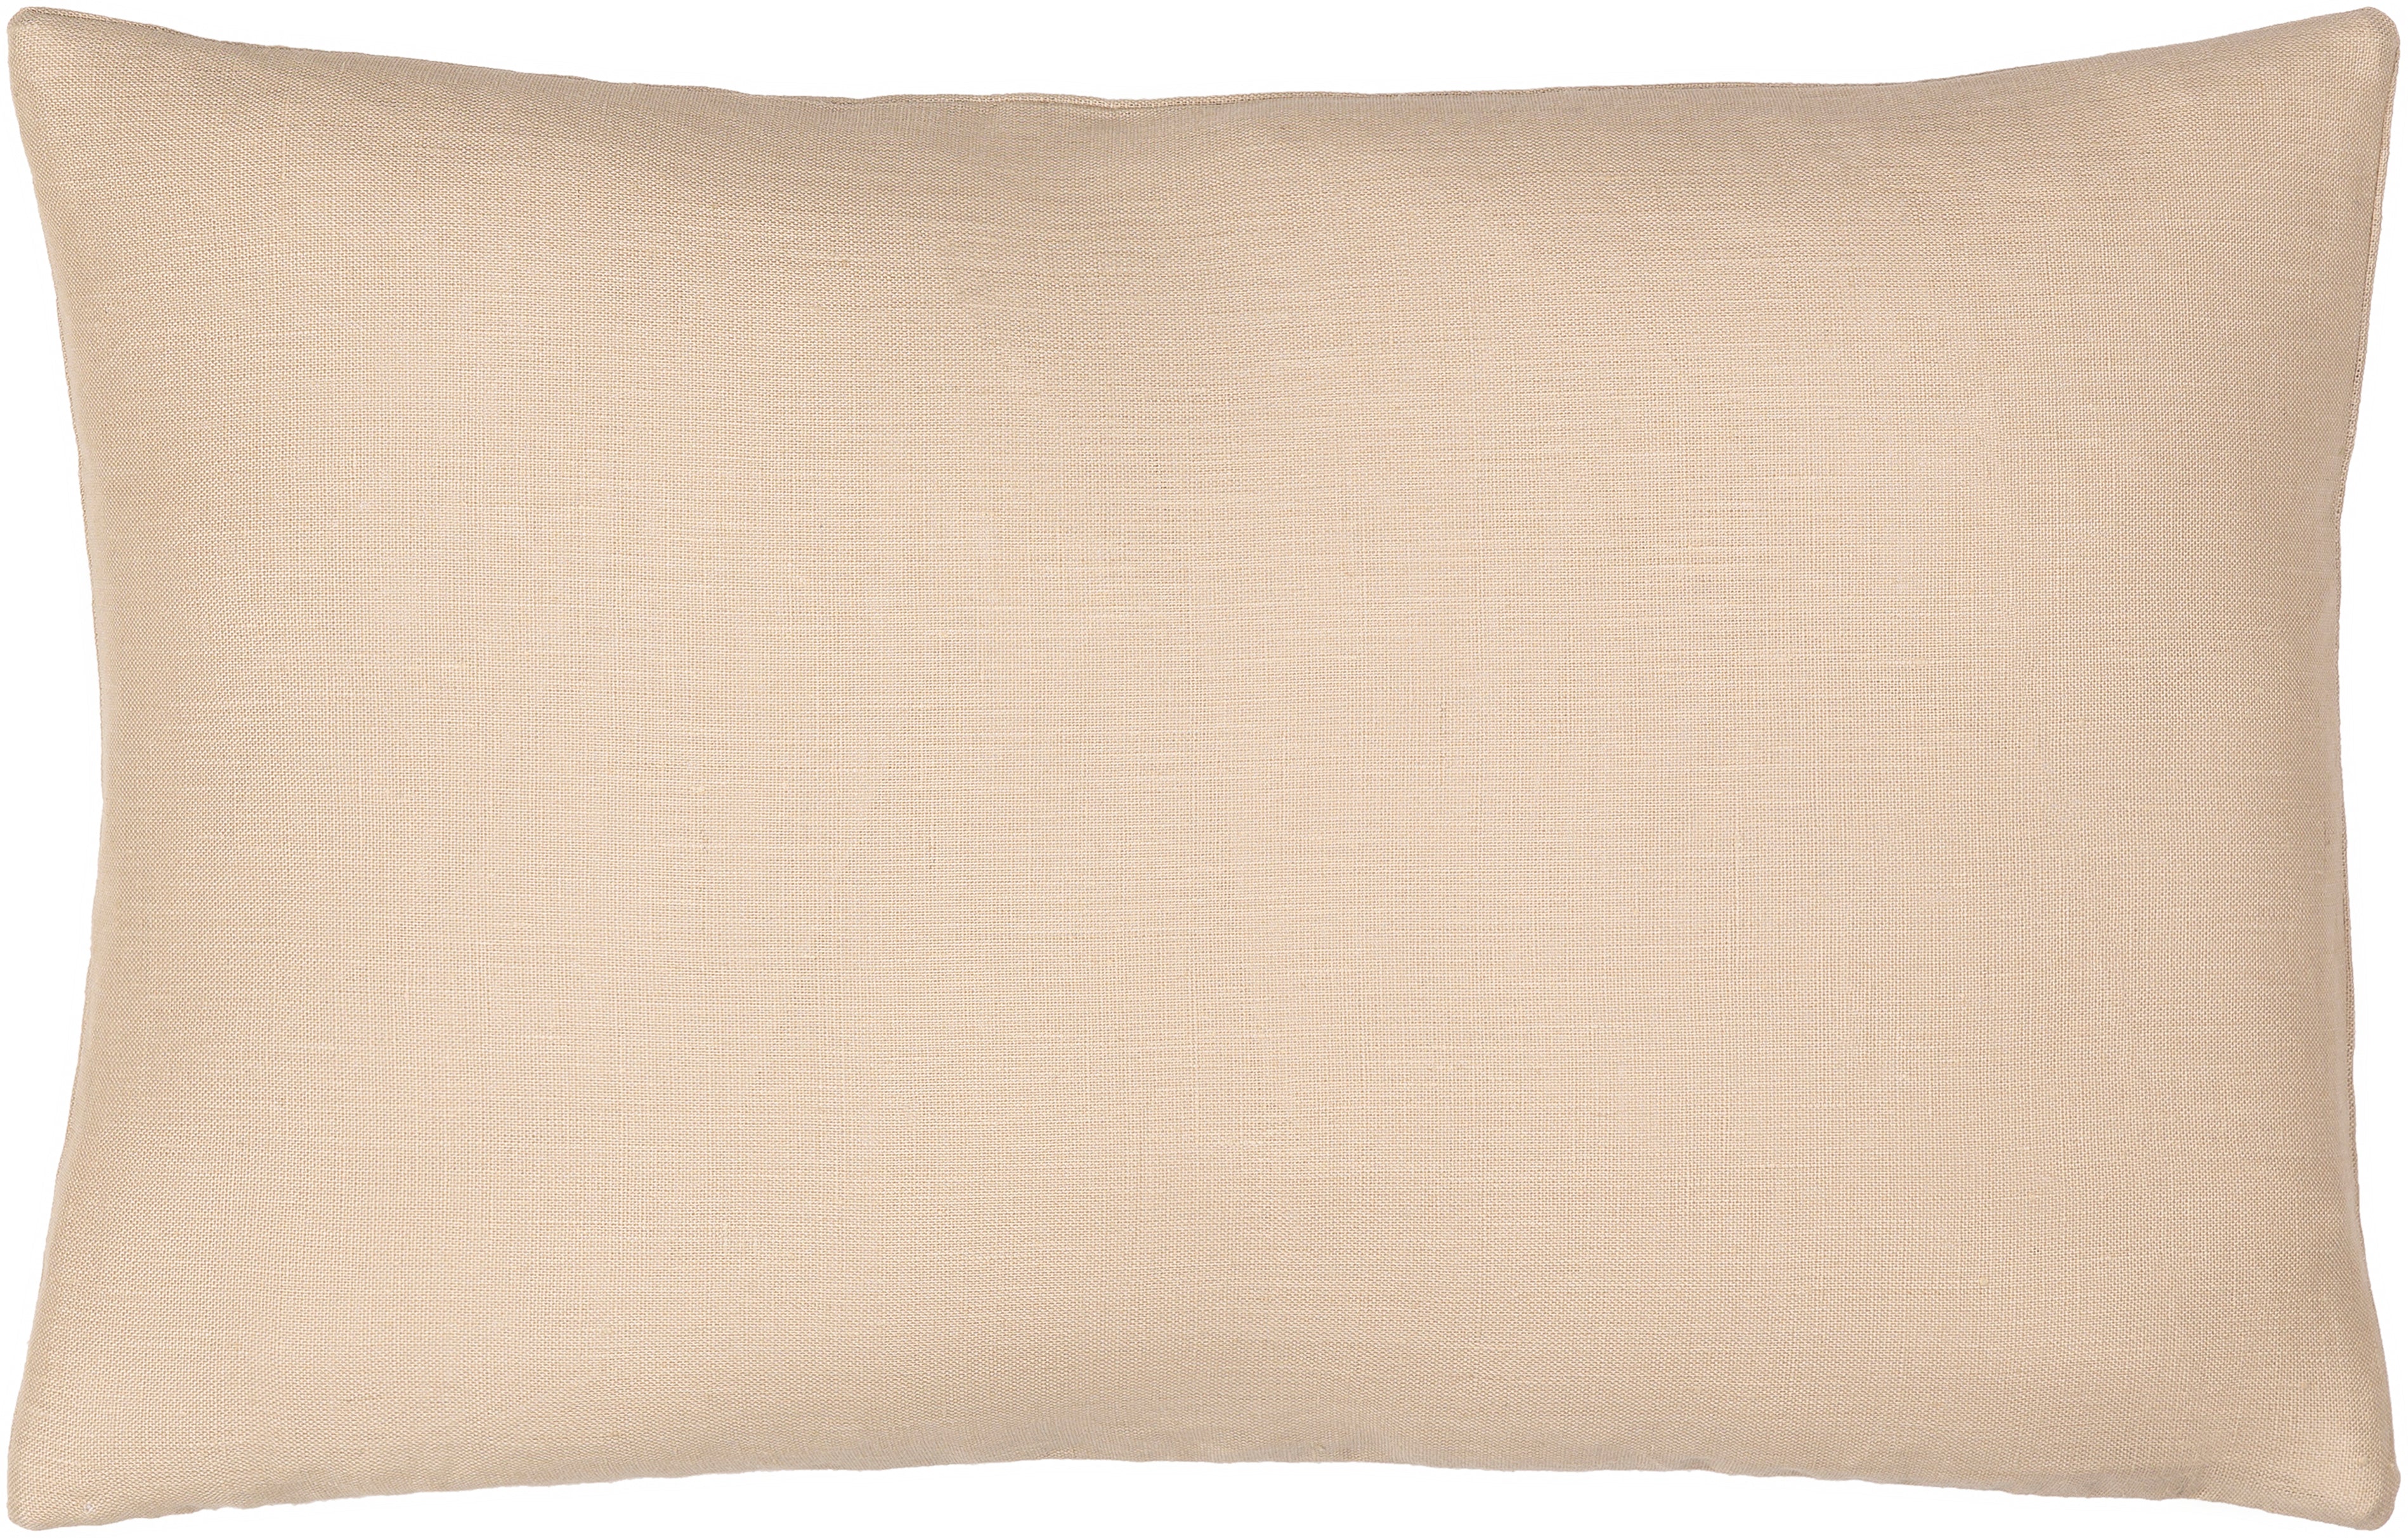 Linen Solid Pillow